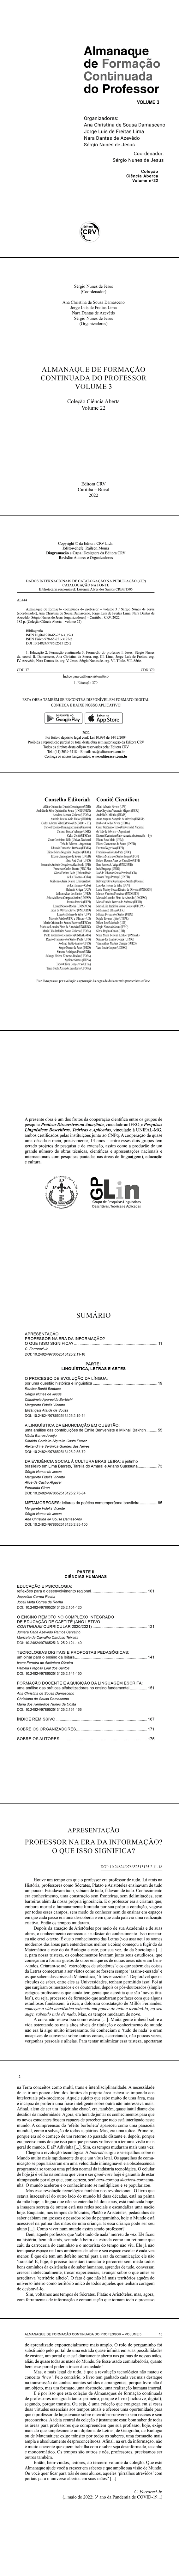 ALMANAQUE DE FORMAÇÃO CONTINUADA DO PROFESSOR<br> VOLUME 3 <br>Coleção Ciência Aberta <br>Volume 22